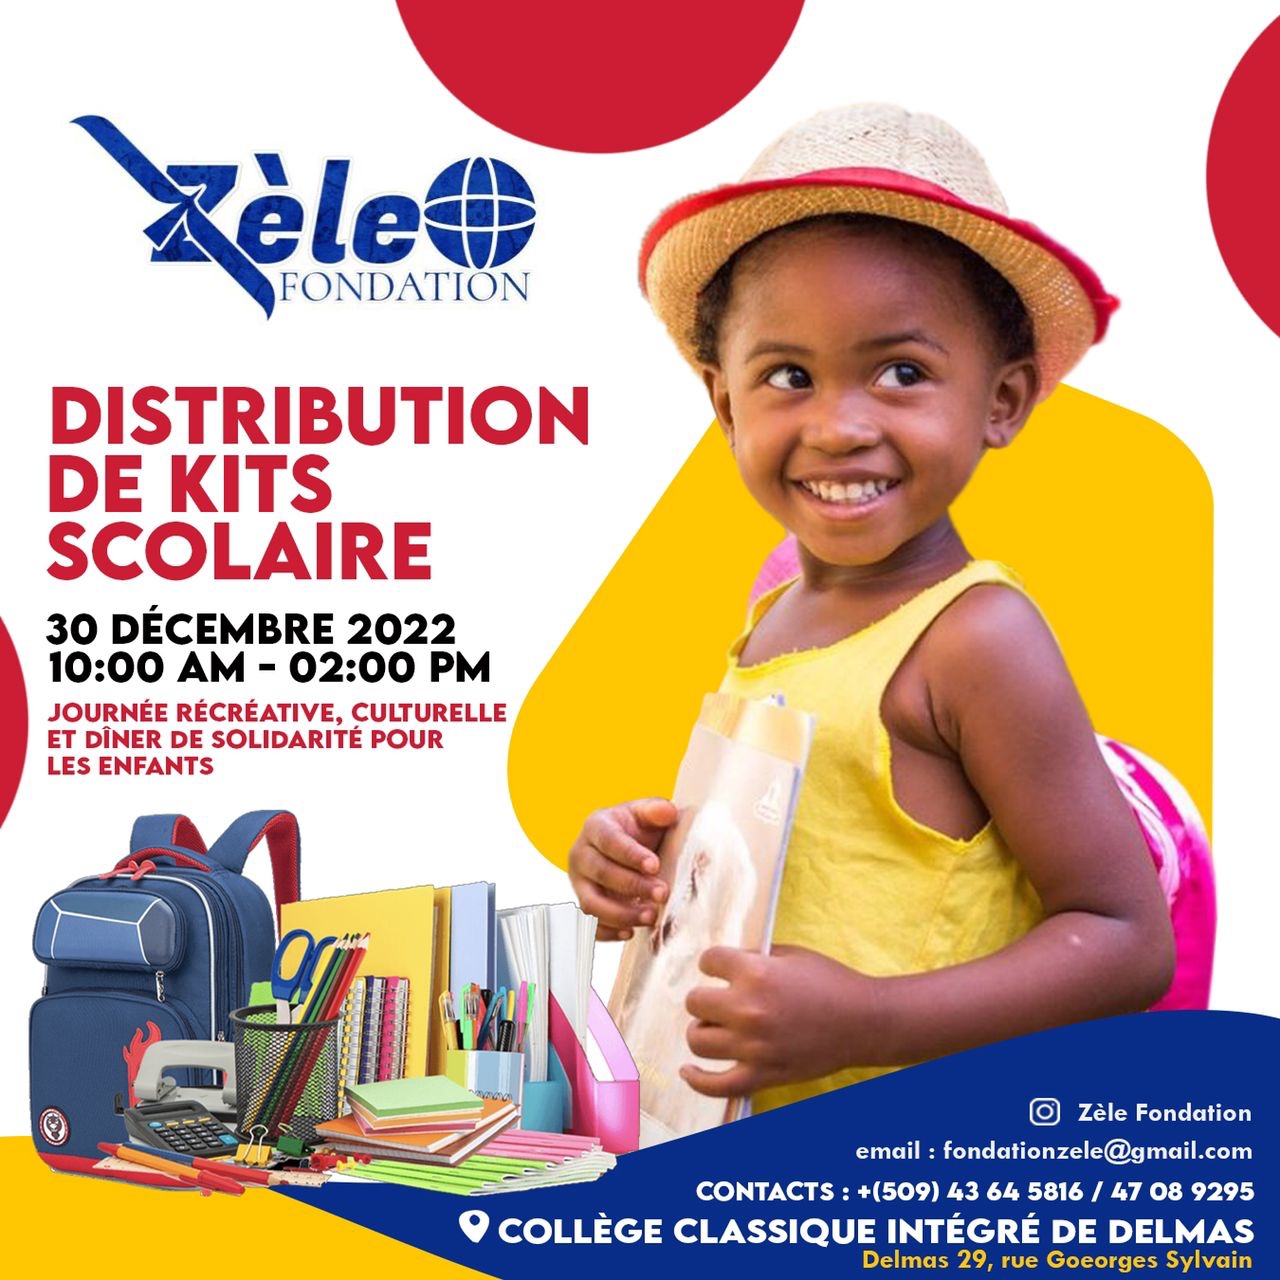 ZÈLE fondation distribue des Kits scolaires à une centaine d’enfants pour la rentrée scolaire en janvier 2023